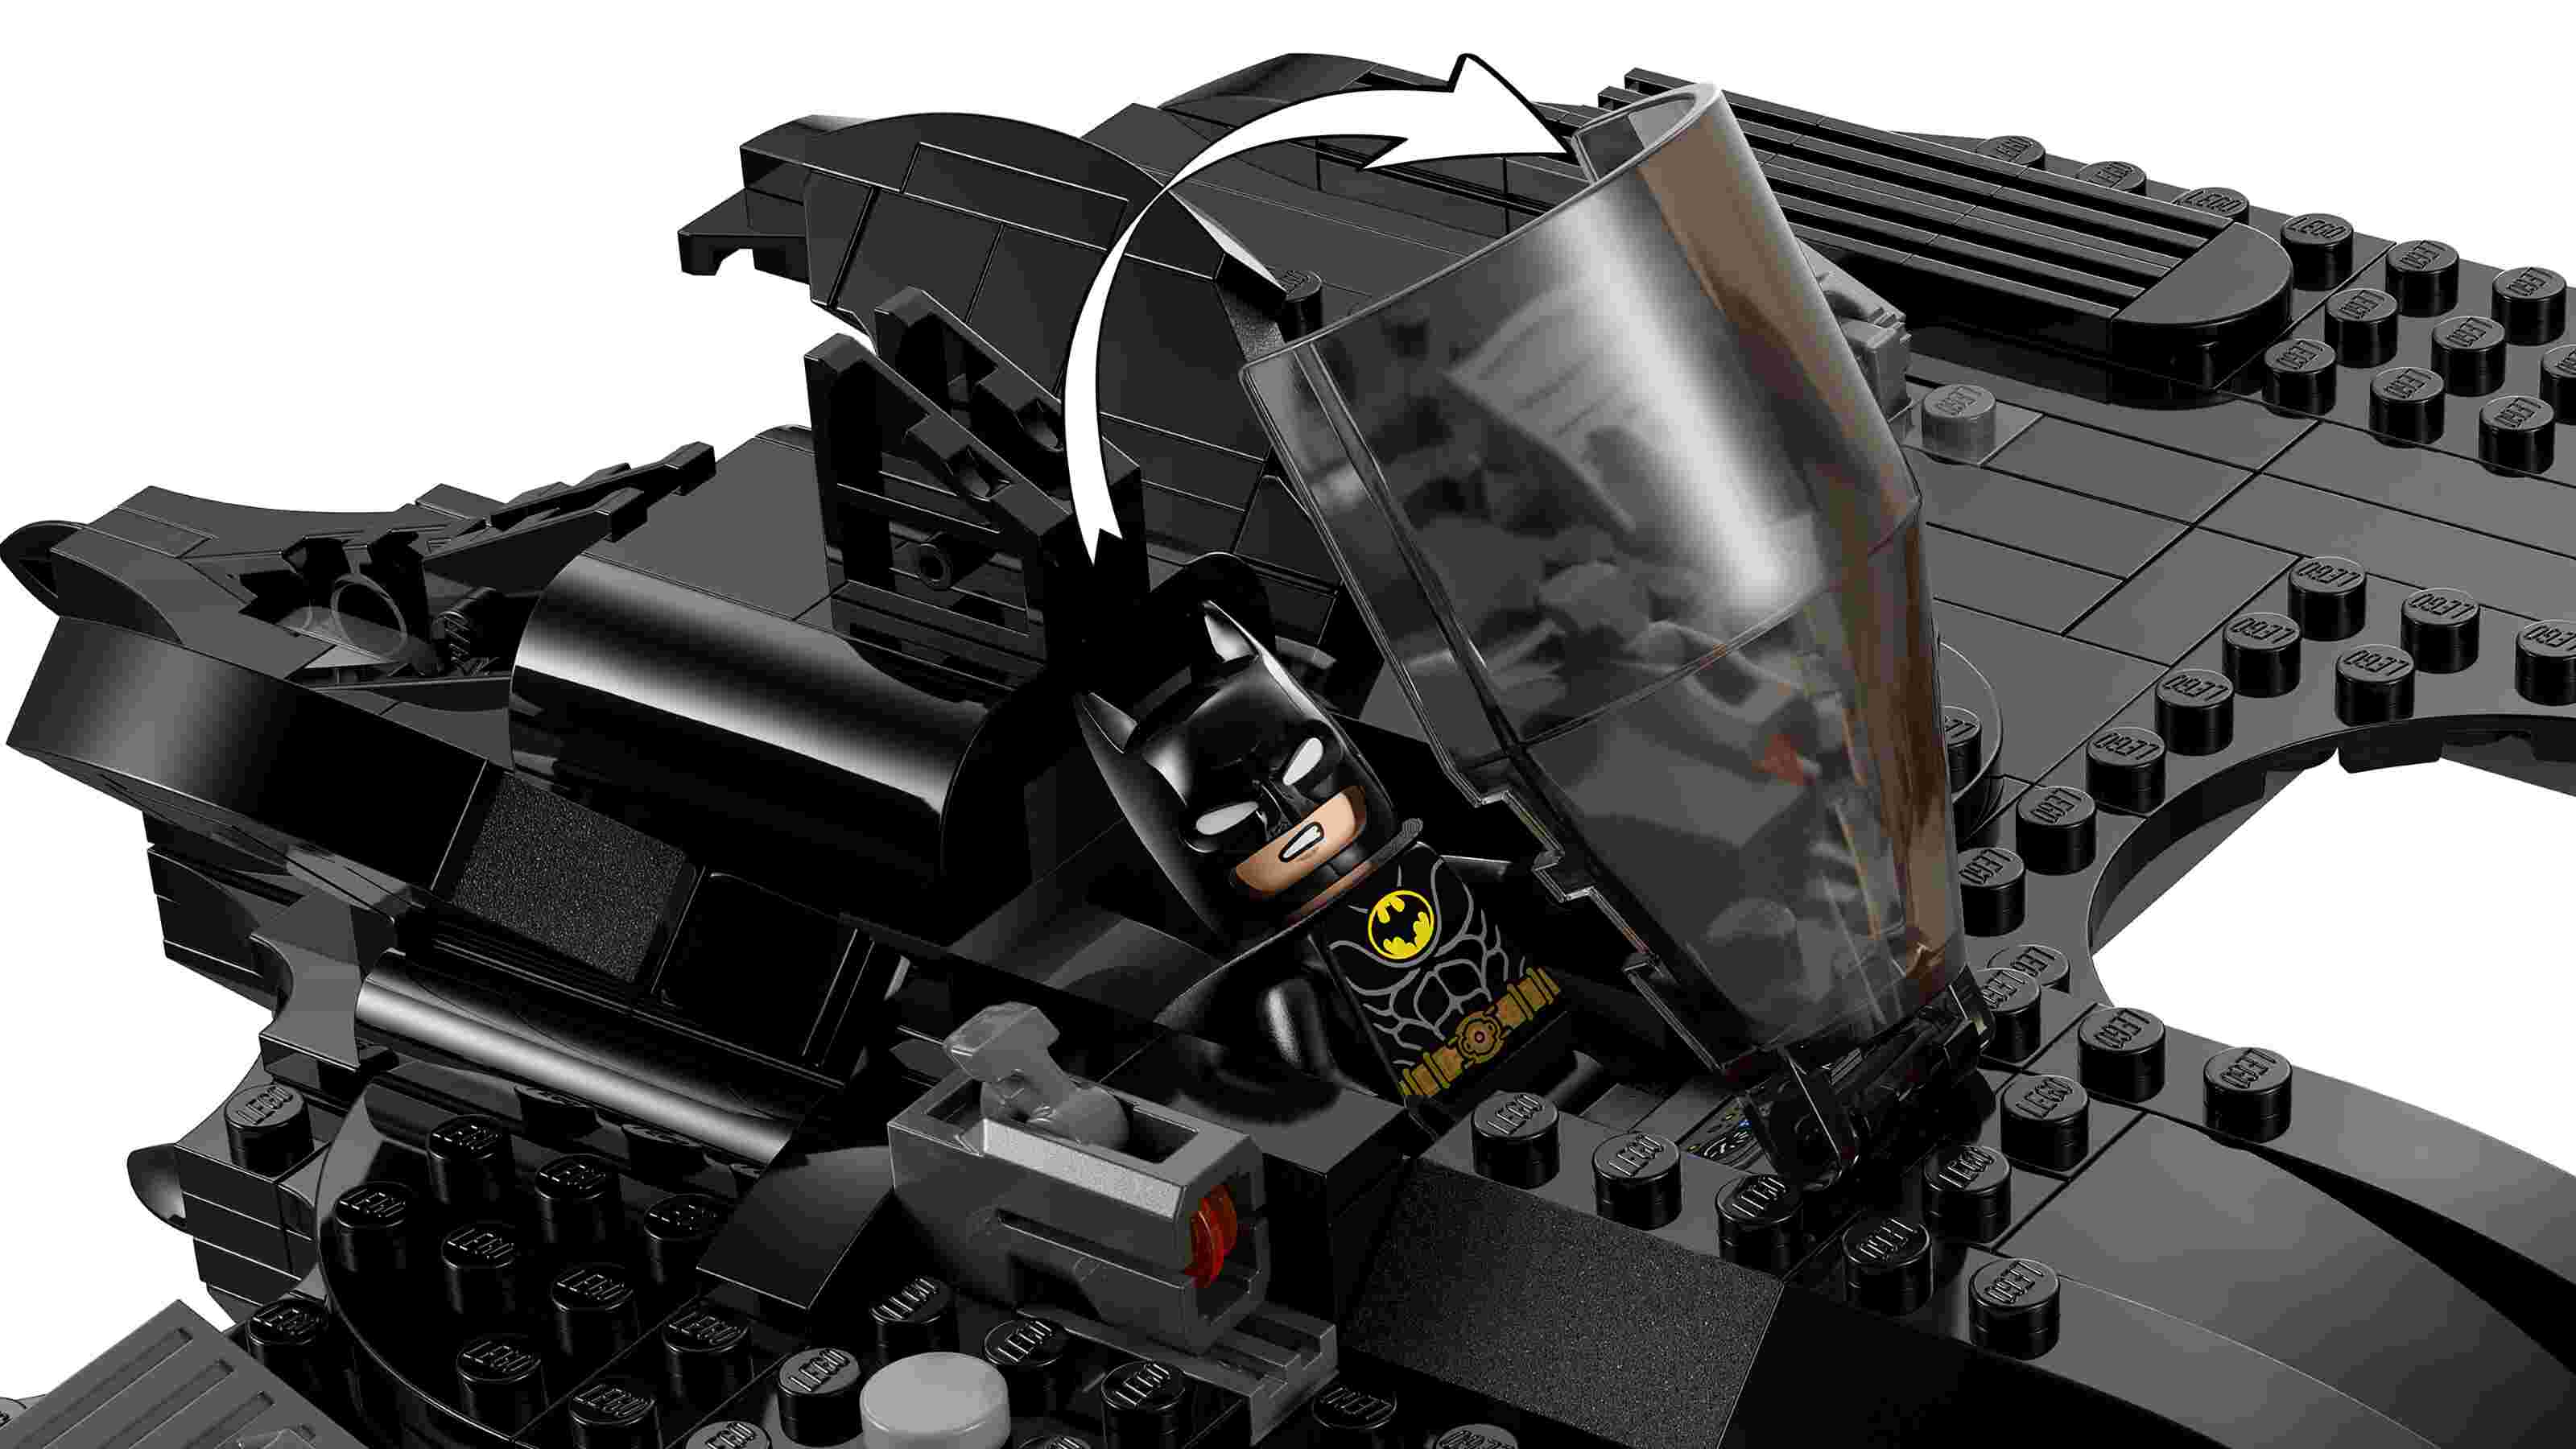 LEGO 76265 DC Batwing: Batman vs. Joker, 2 Minifiguren, Film von 1989